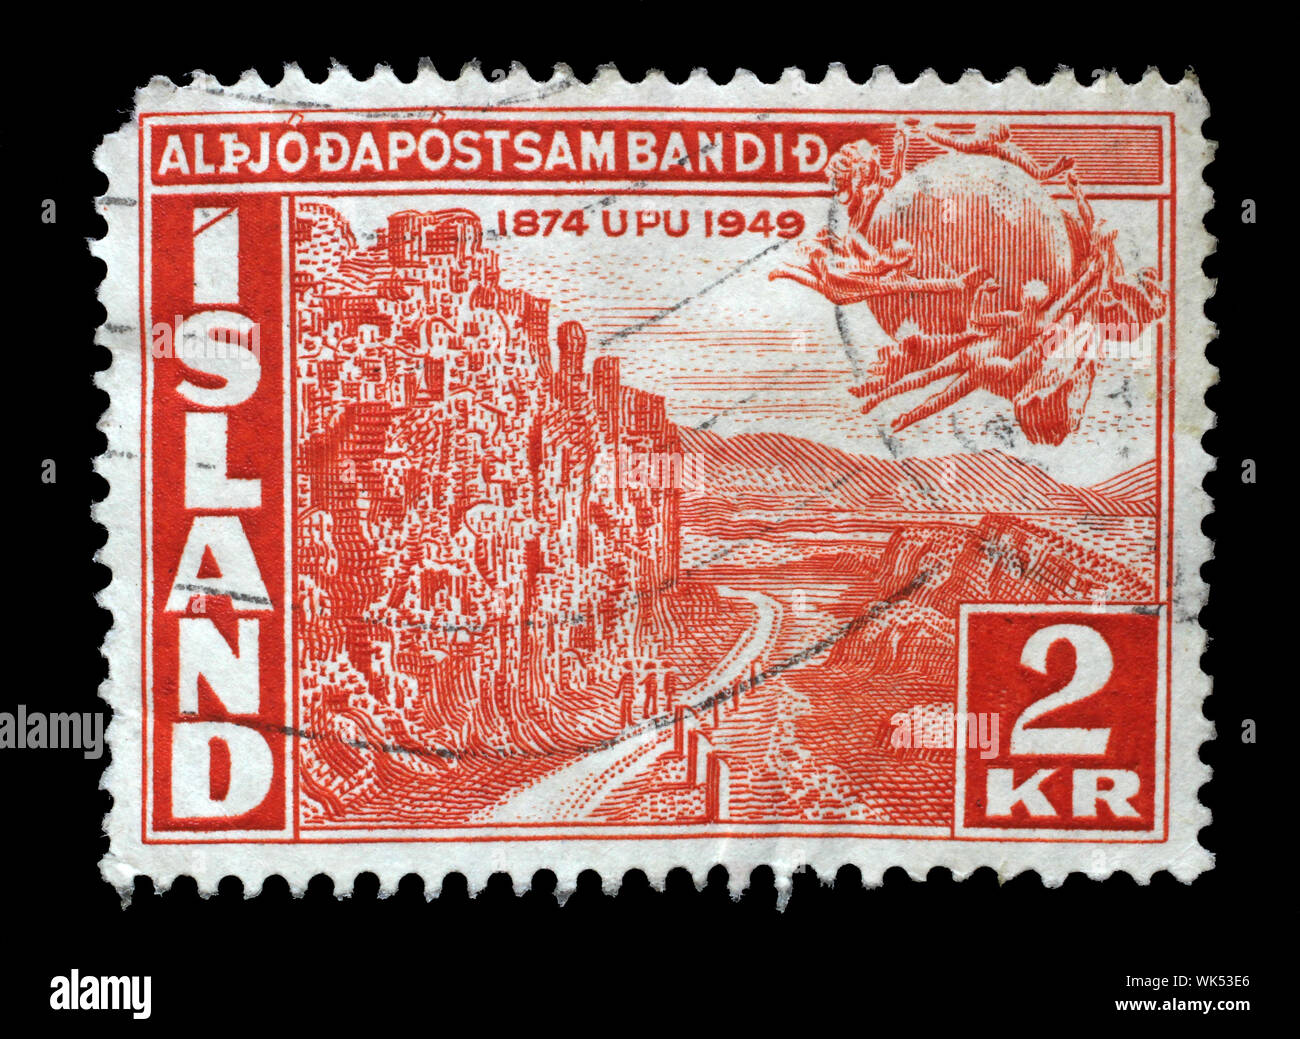 Timbro rilasciato in Islanda mostra il settantacinquesimo anniversario dell'Unione postale universale, circa 1949. Foto Stock